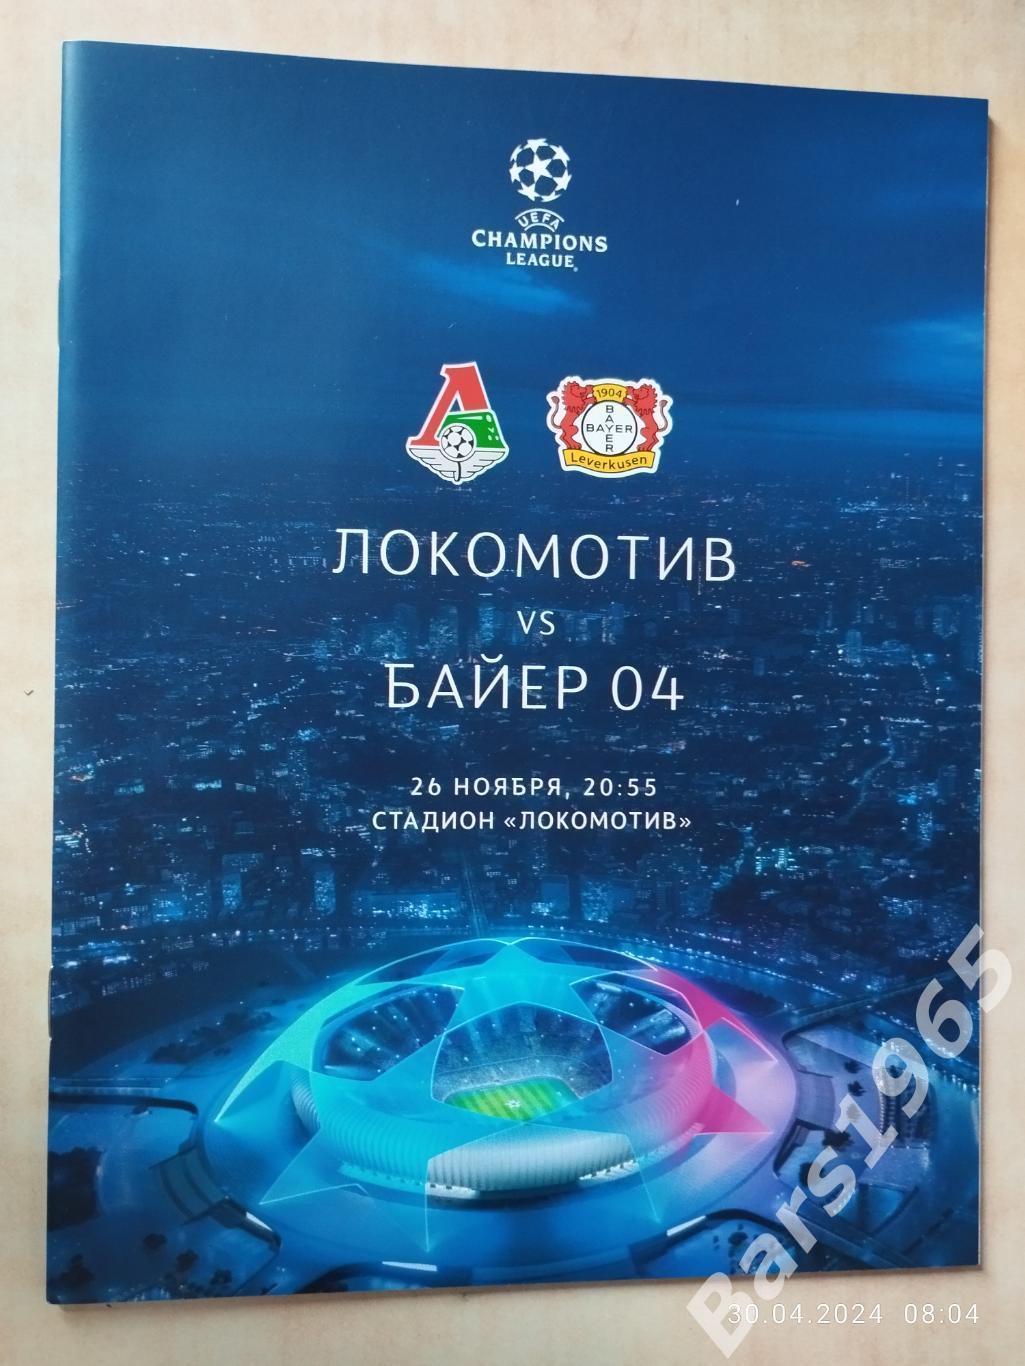 Локомотив Москва - Байер 04 Германия 2019